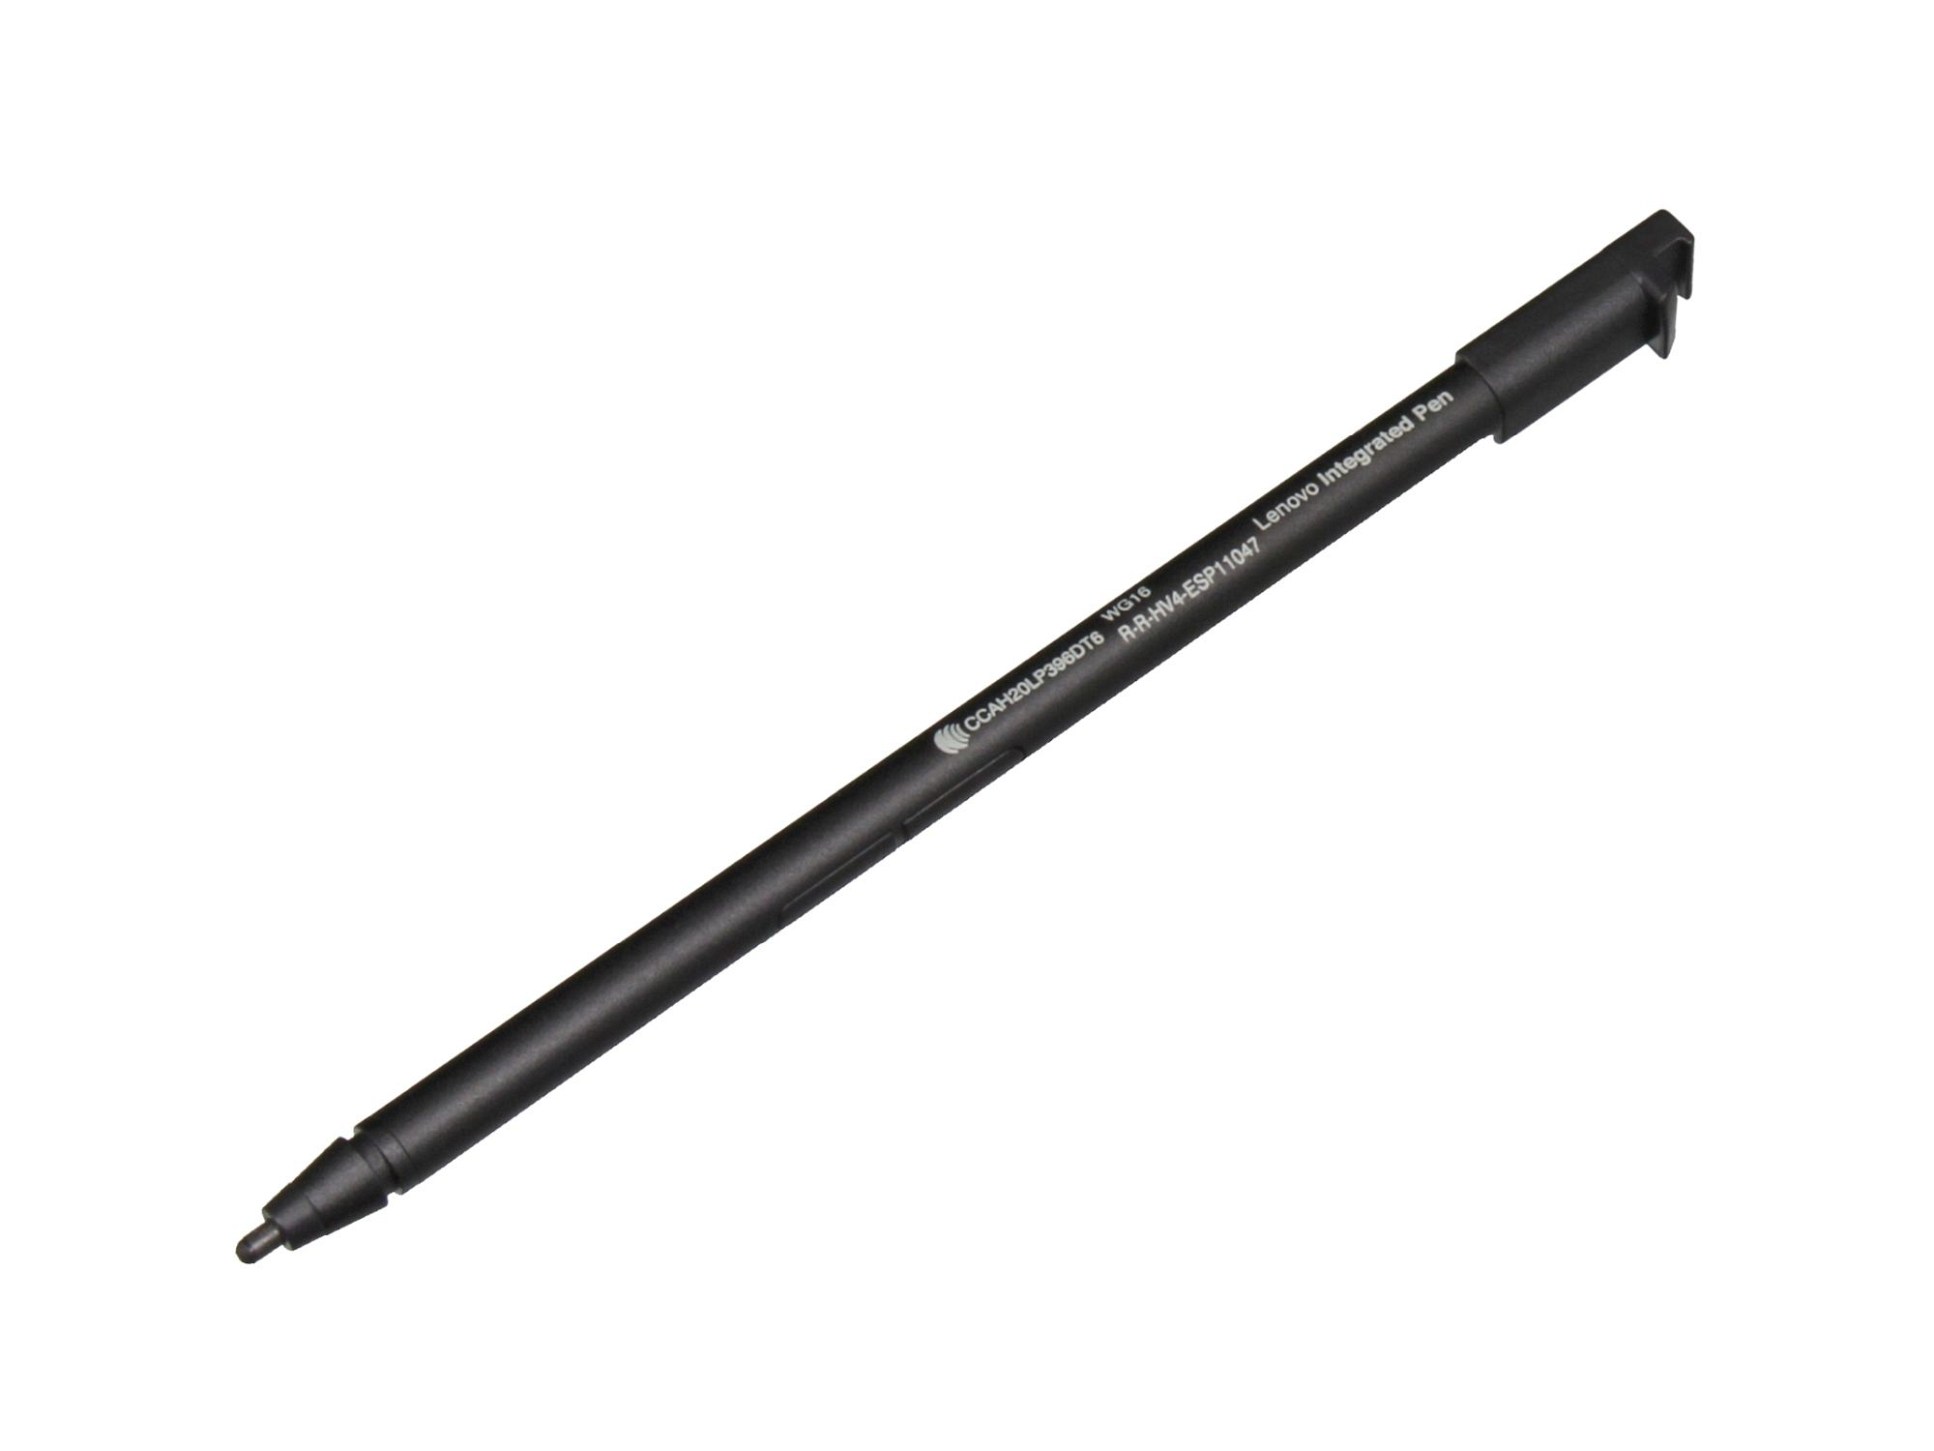 Lenovo SD61K08706 Stylus Pen